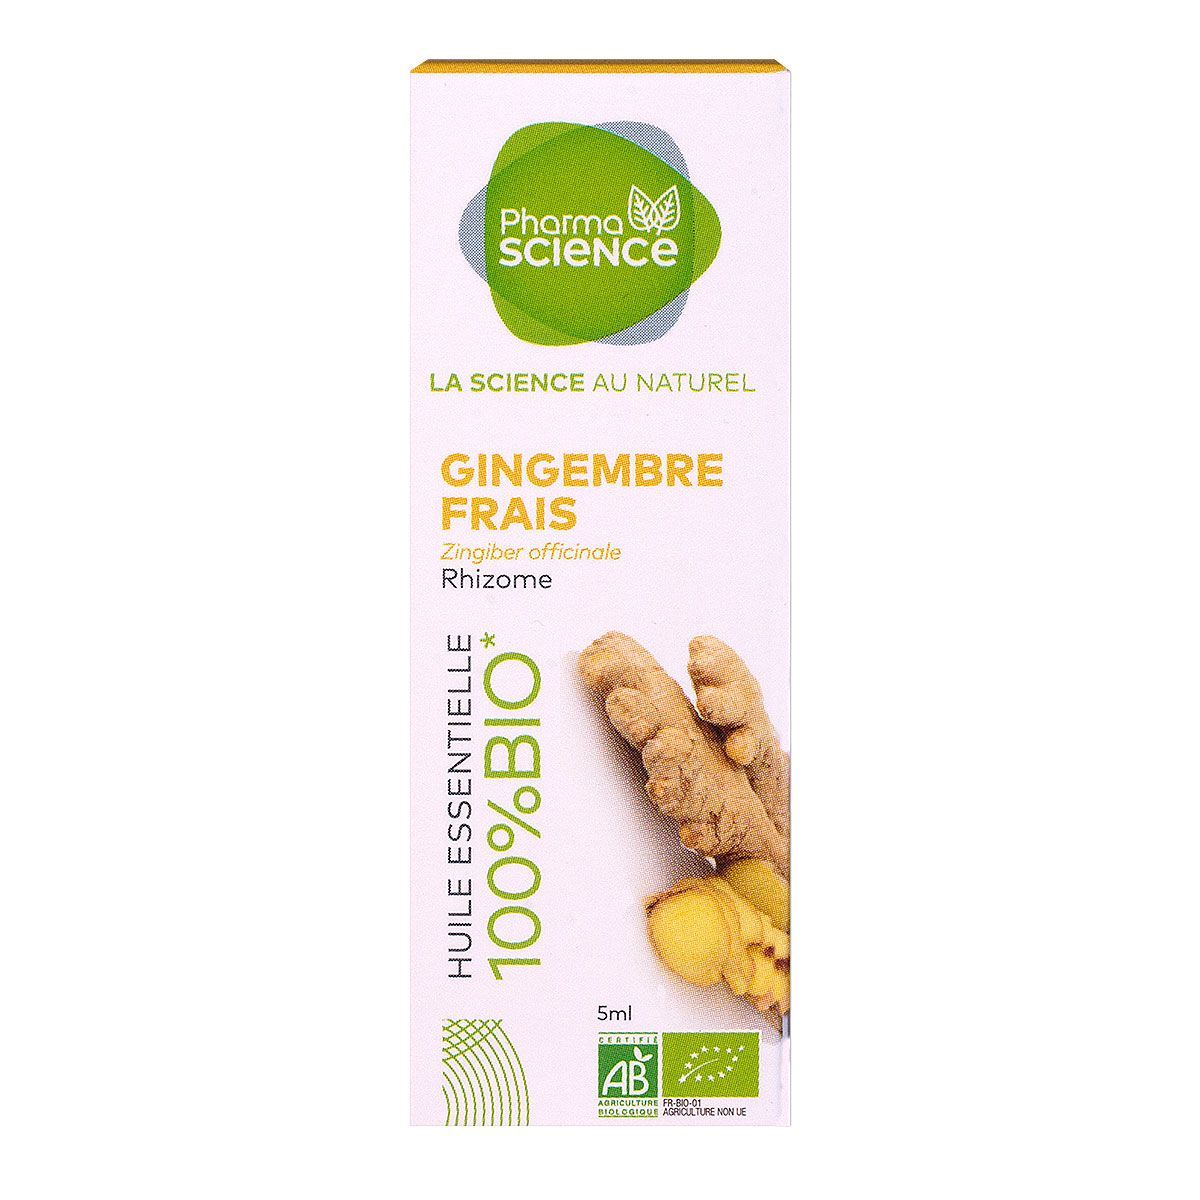 L'huile essentielle de gingembre frais Pharmascience est stimulante  digestive, anti-inflammatoire.